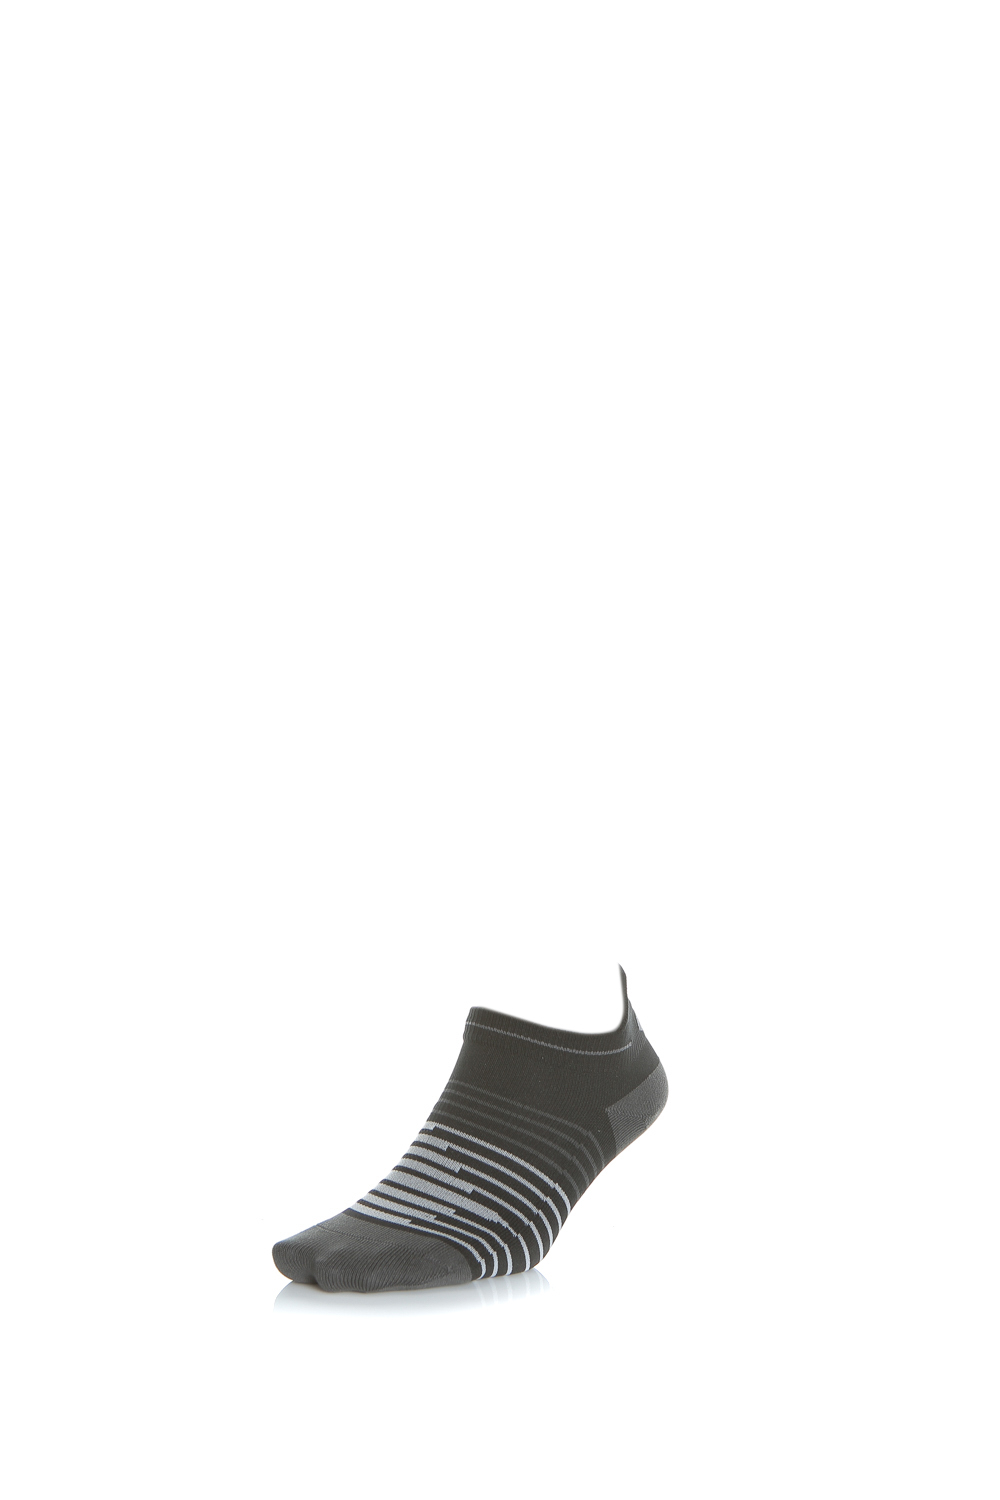 Γυναικεία/Αξεσουάρ/Κάλτσες NIKE - Unisex κάλτσες NIKE μαύρες